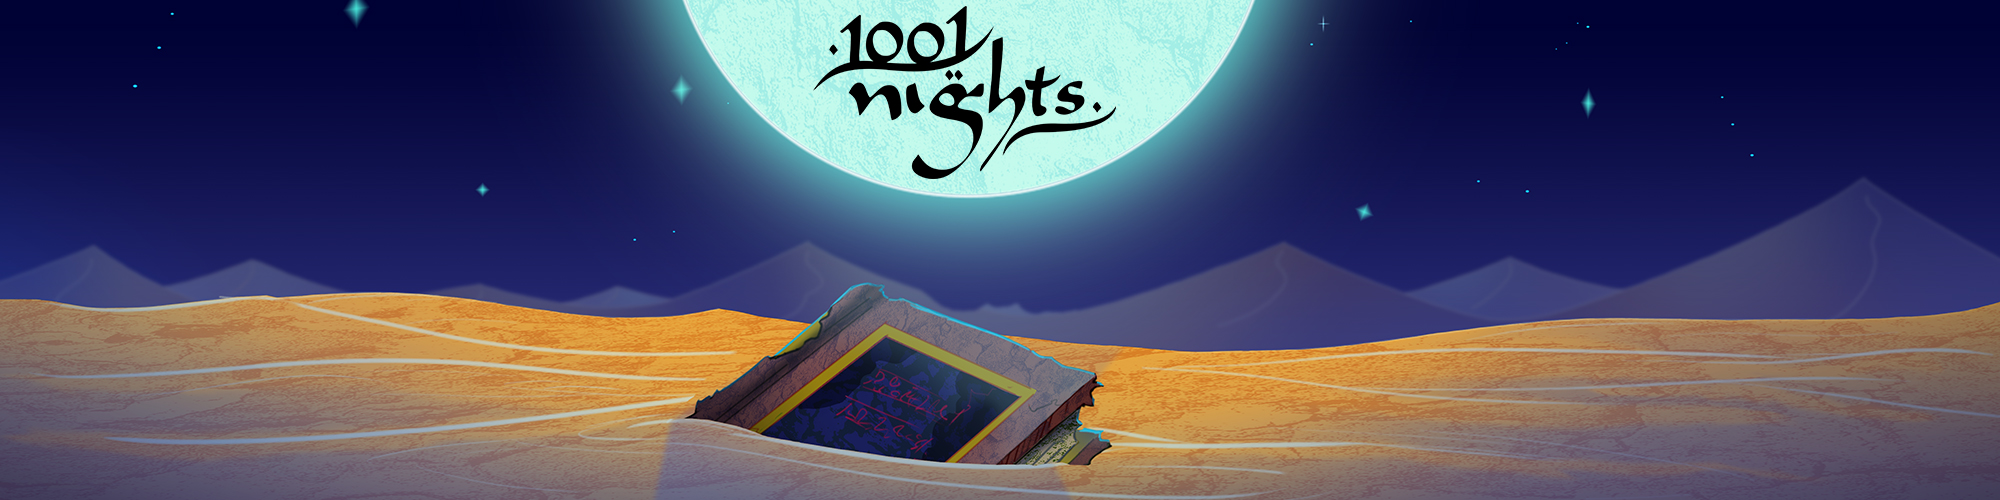 1001 Nights | Big Bad Boo Studios